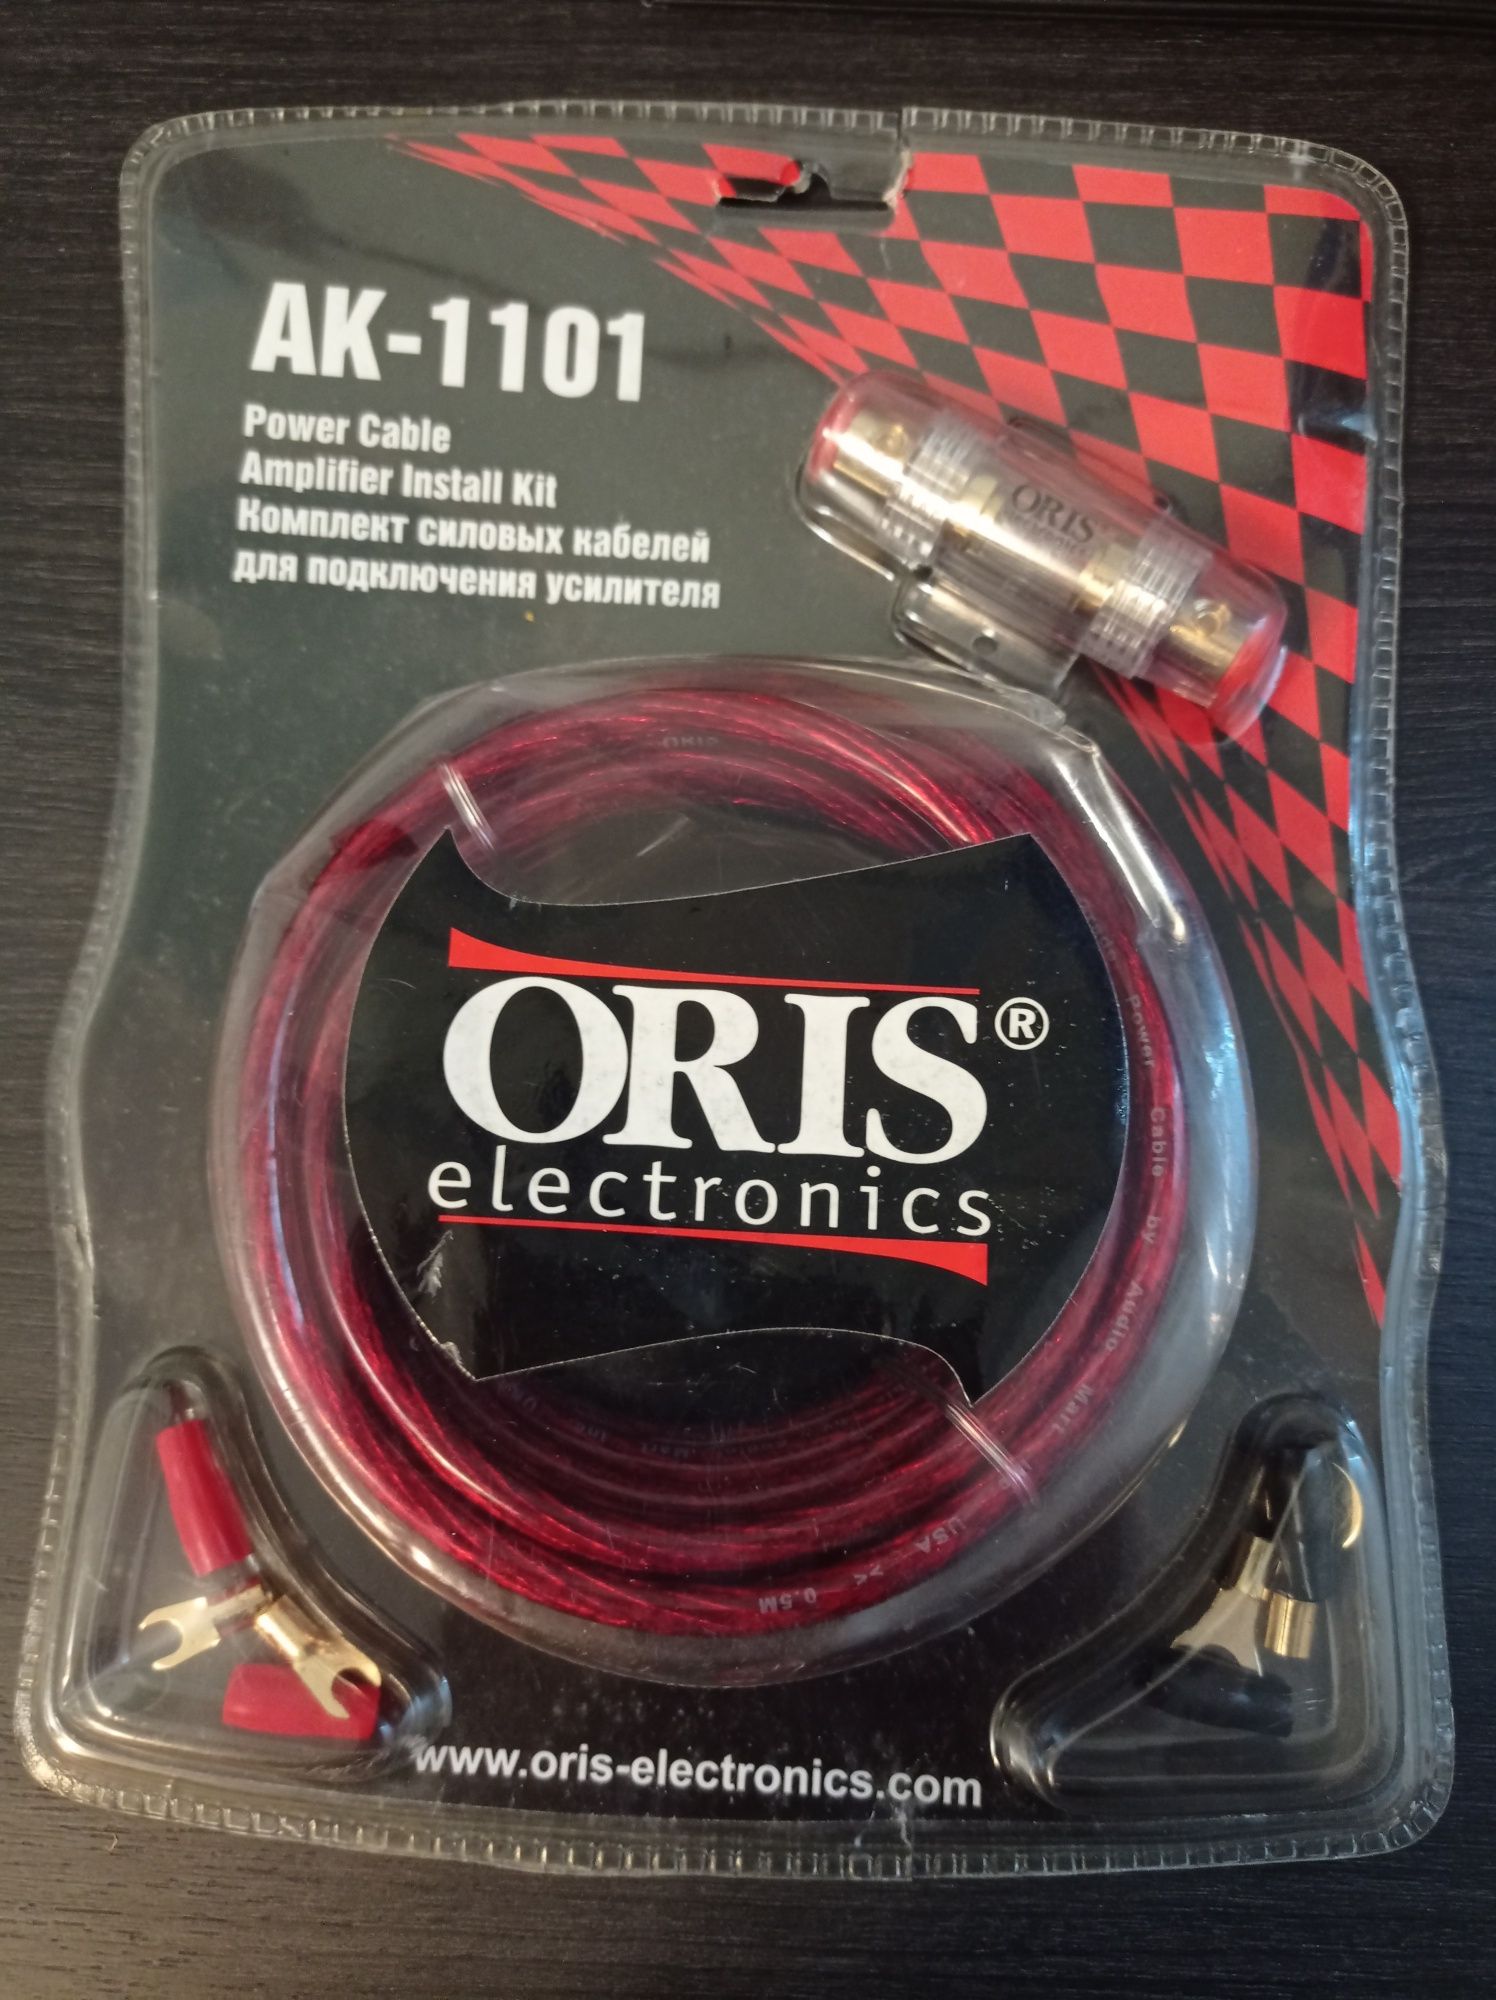 Комплект силовых кабелей для подключения усилителя AK-1101